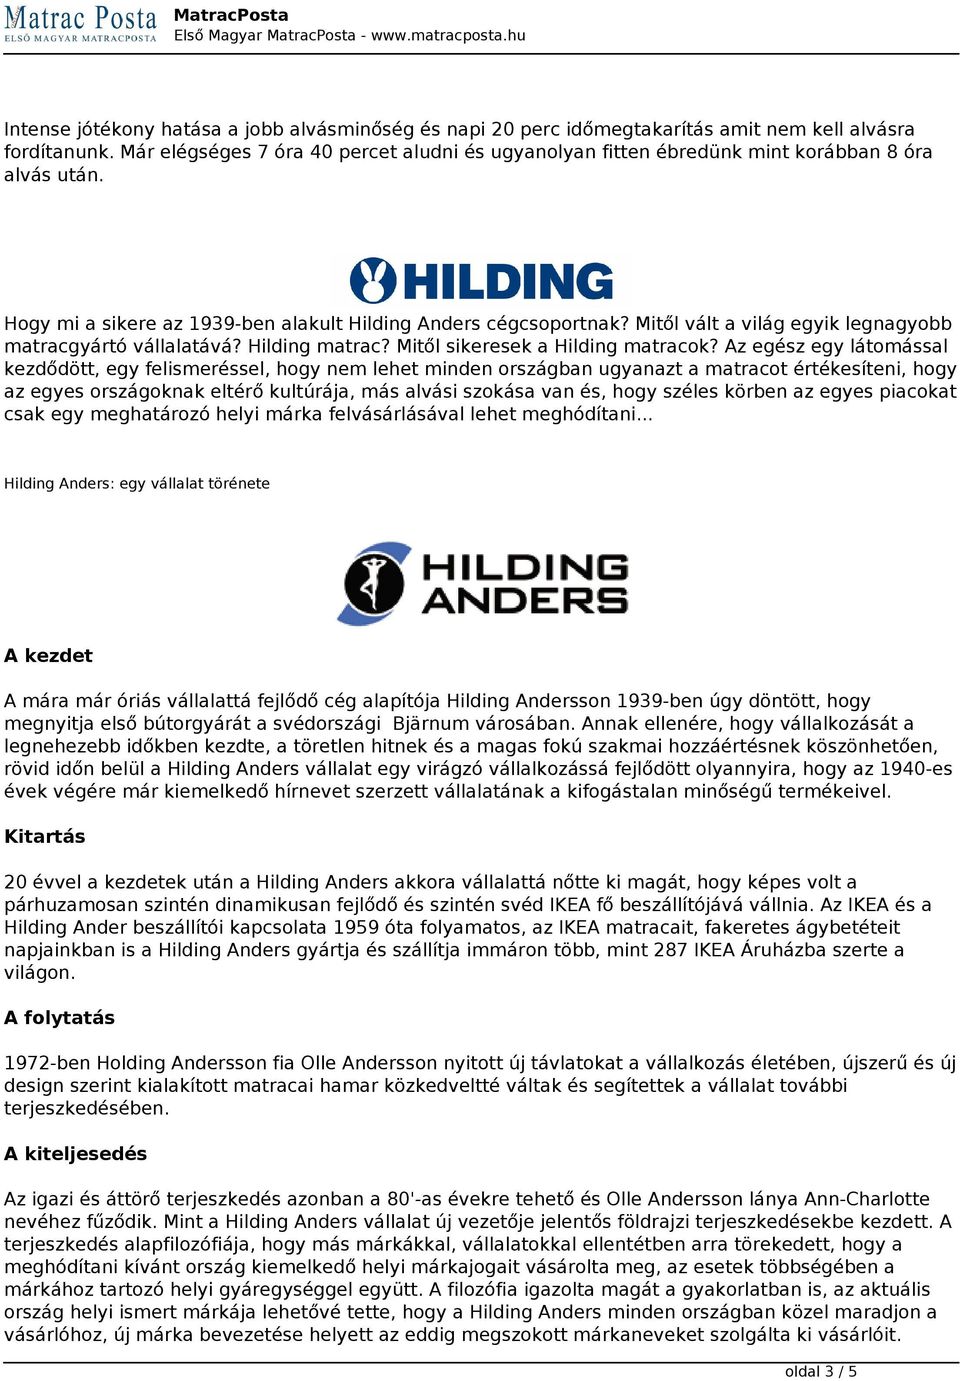 Mitől vált a világ egyik legnagyobb matracgyártó vállalatává? Hilding matrac? Mitől sikeresek a Hilding matracok?